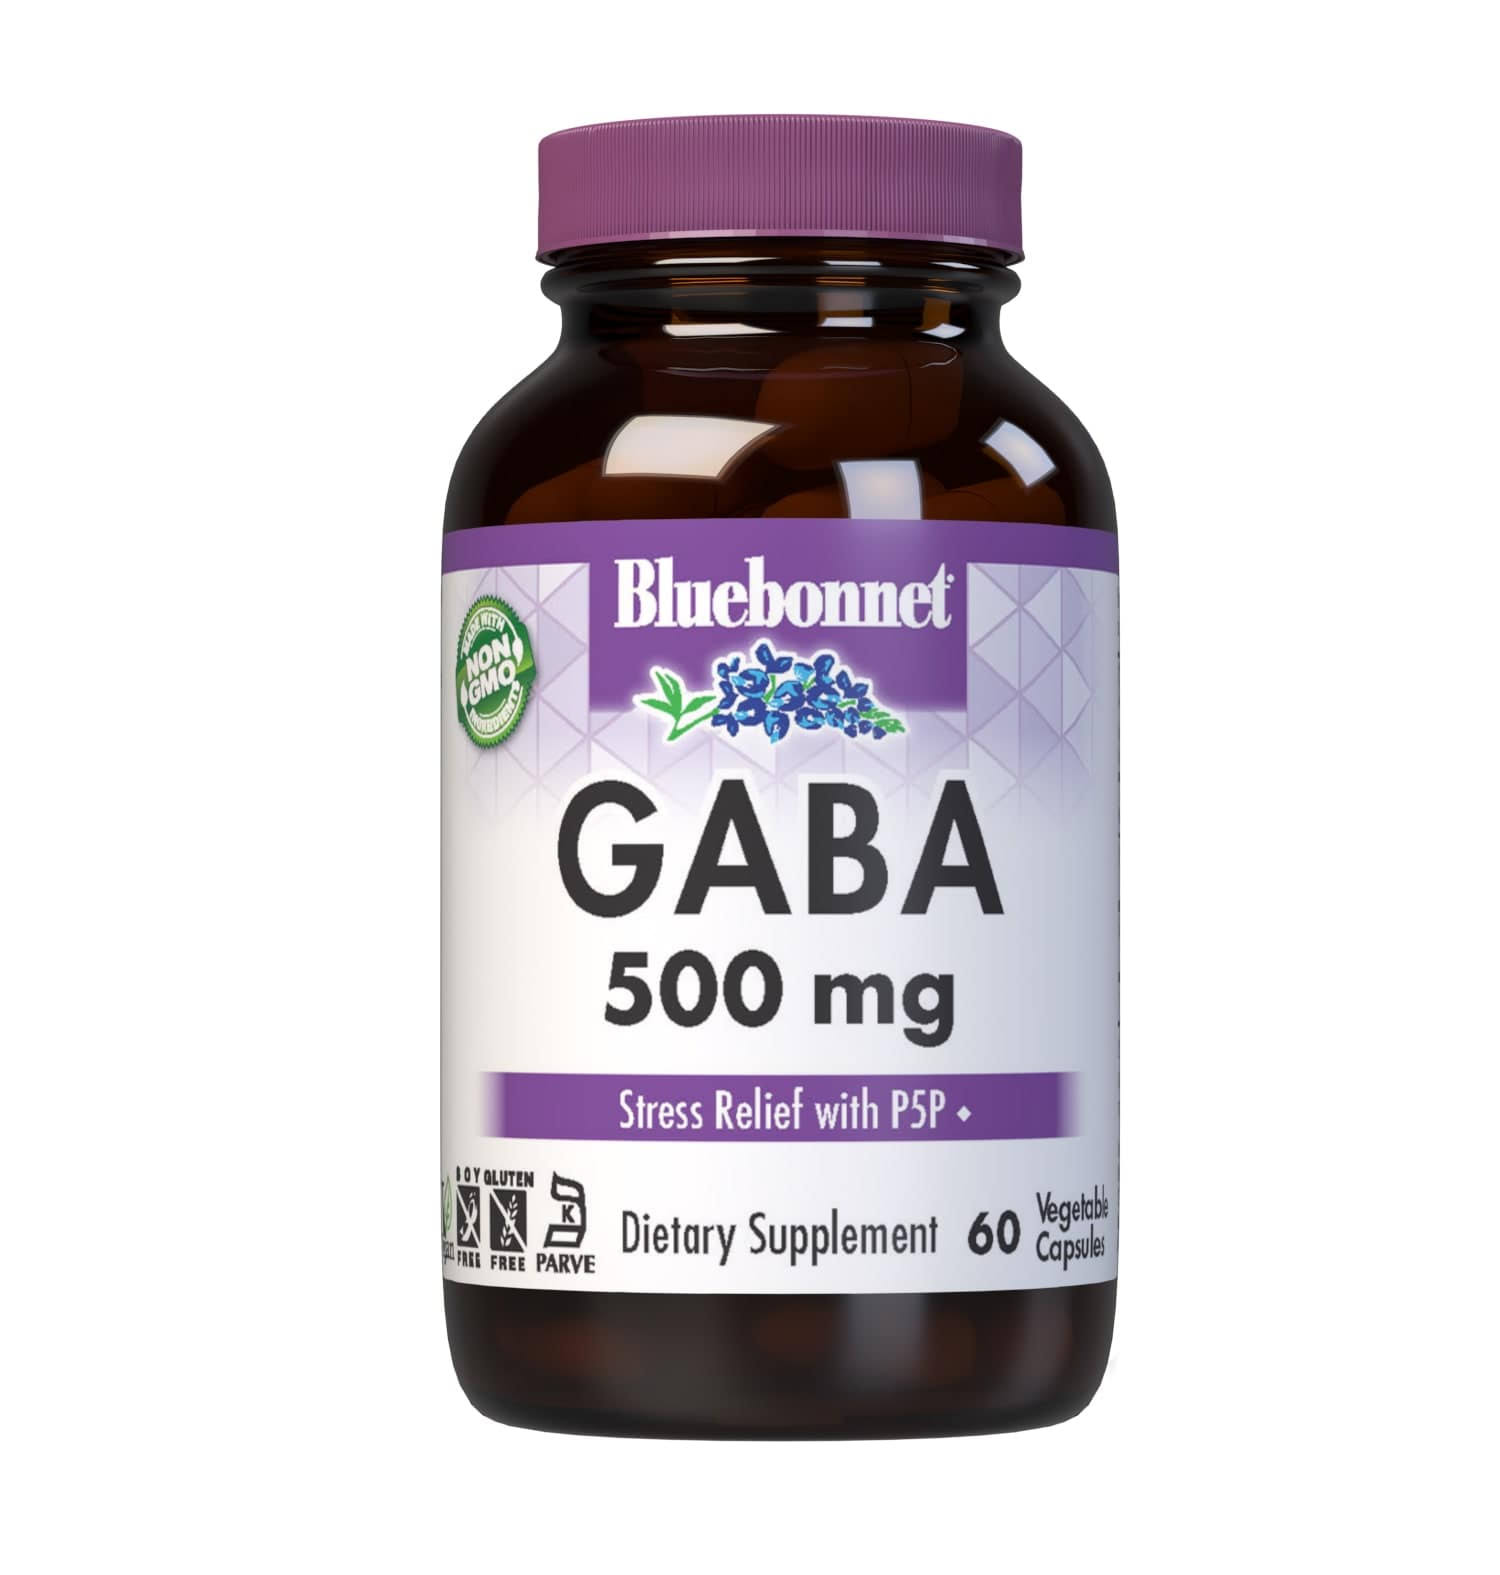 Bluebonnet GABA 500 mg - 60 Capsules